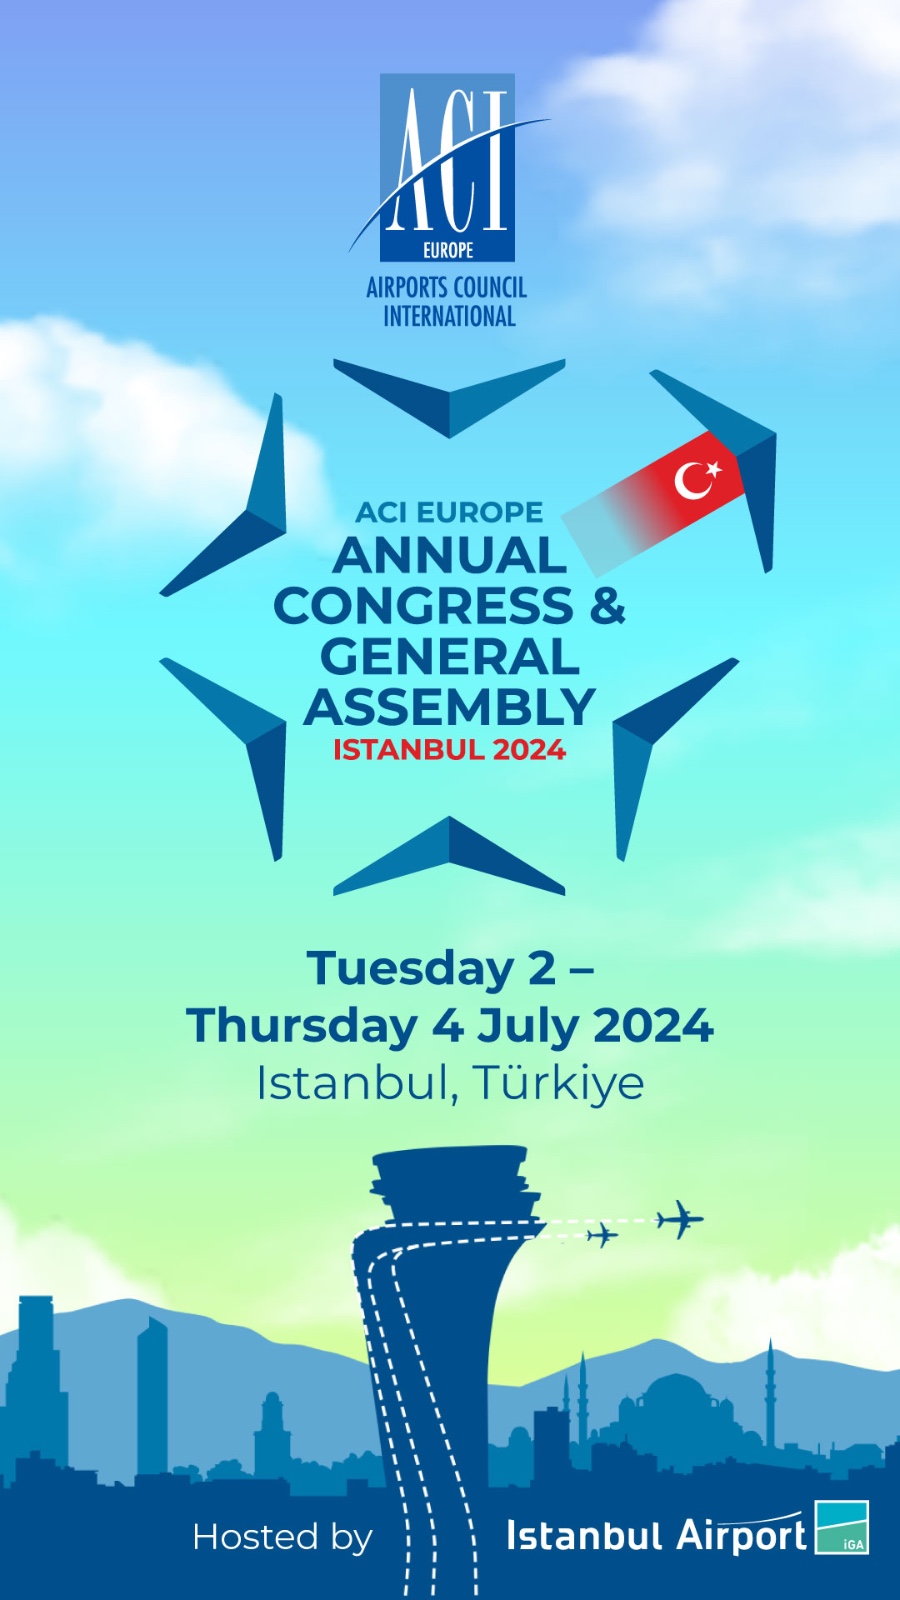 İGA İstanbul Havalimanı ‘doğrudan bağlantı’da Avrupa’nın zirvesinde 5 Temmuz 2024